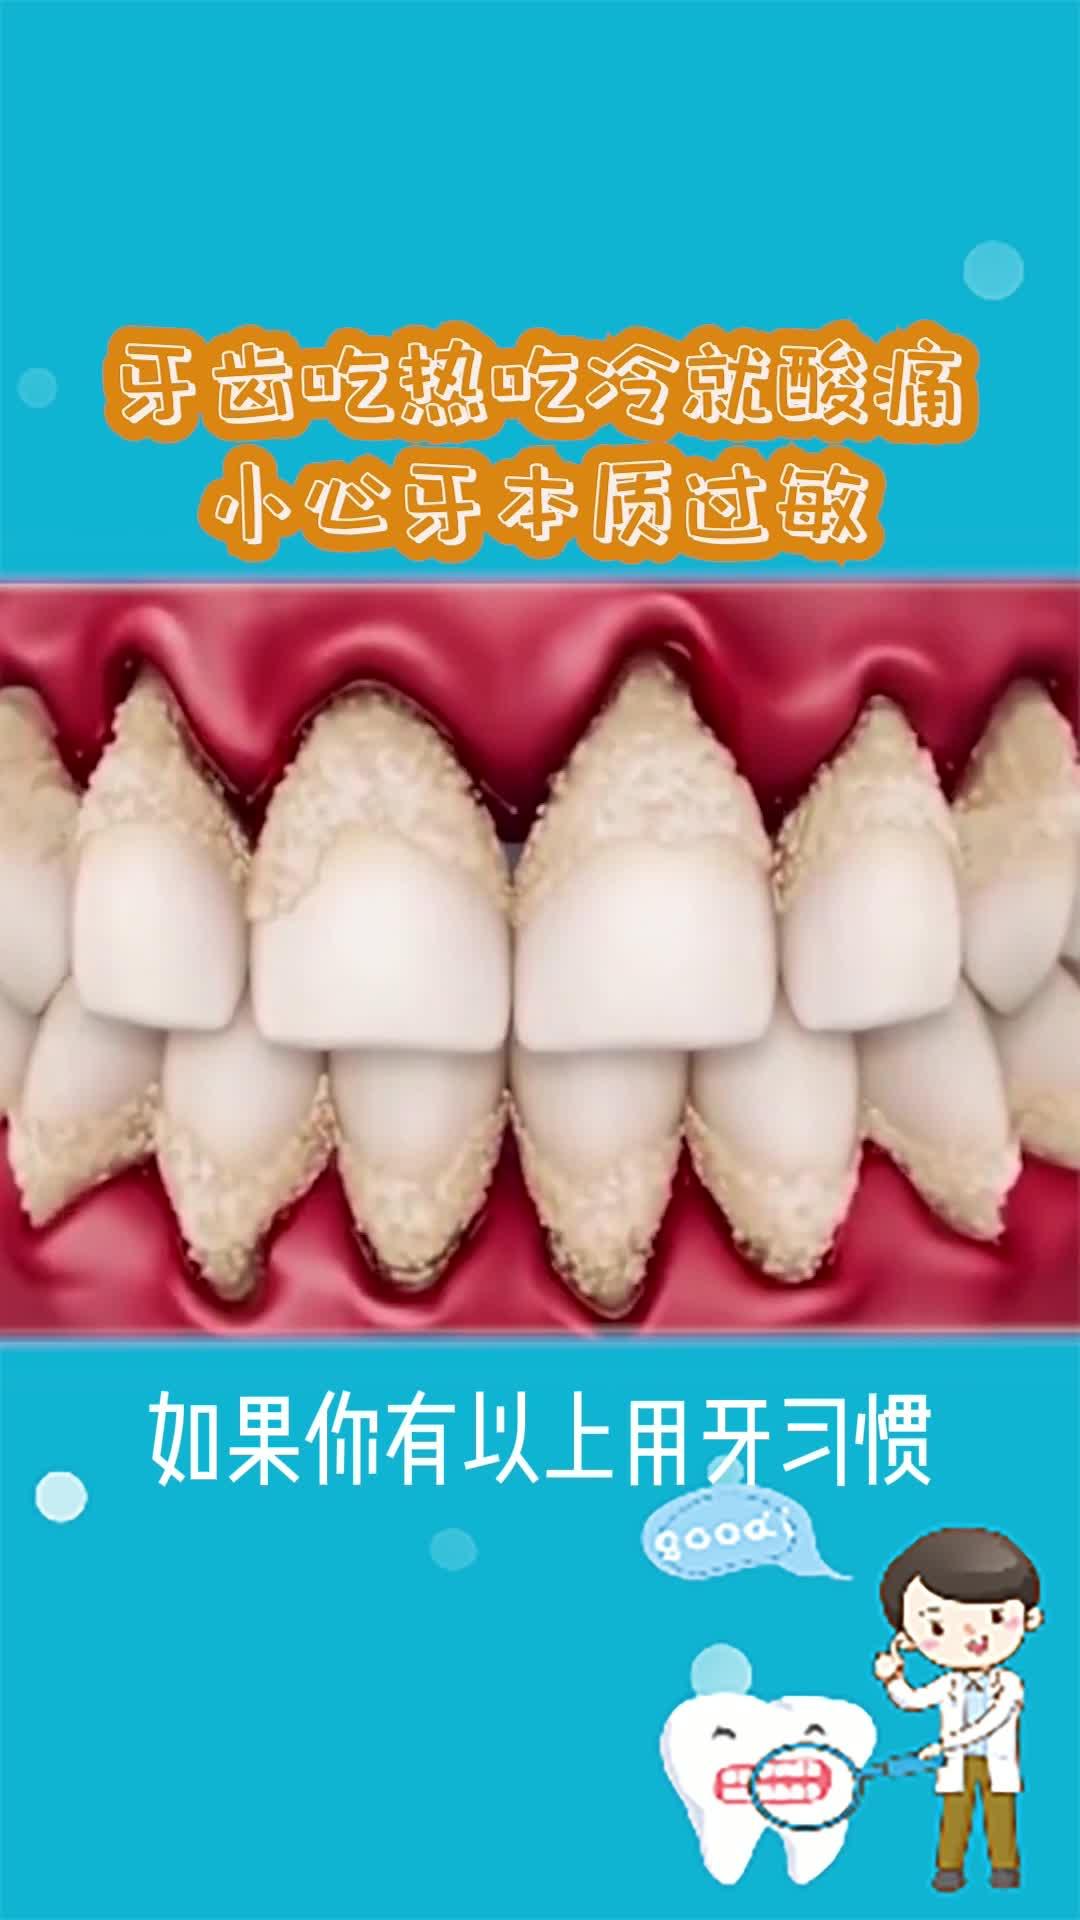 牙酸蚀症 - 口腔医学 - 天山医学院